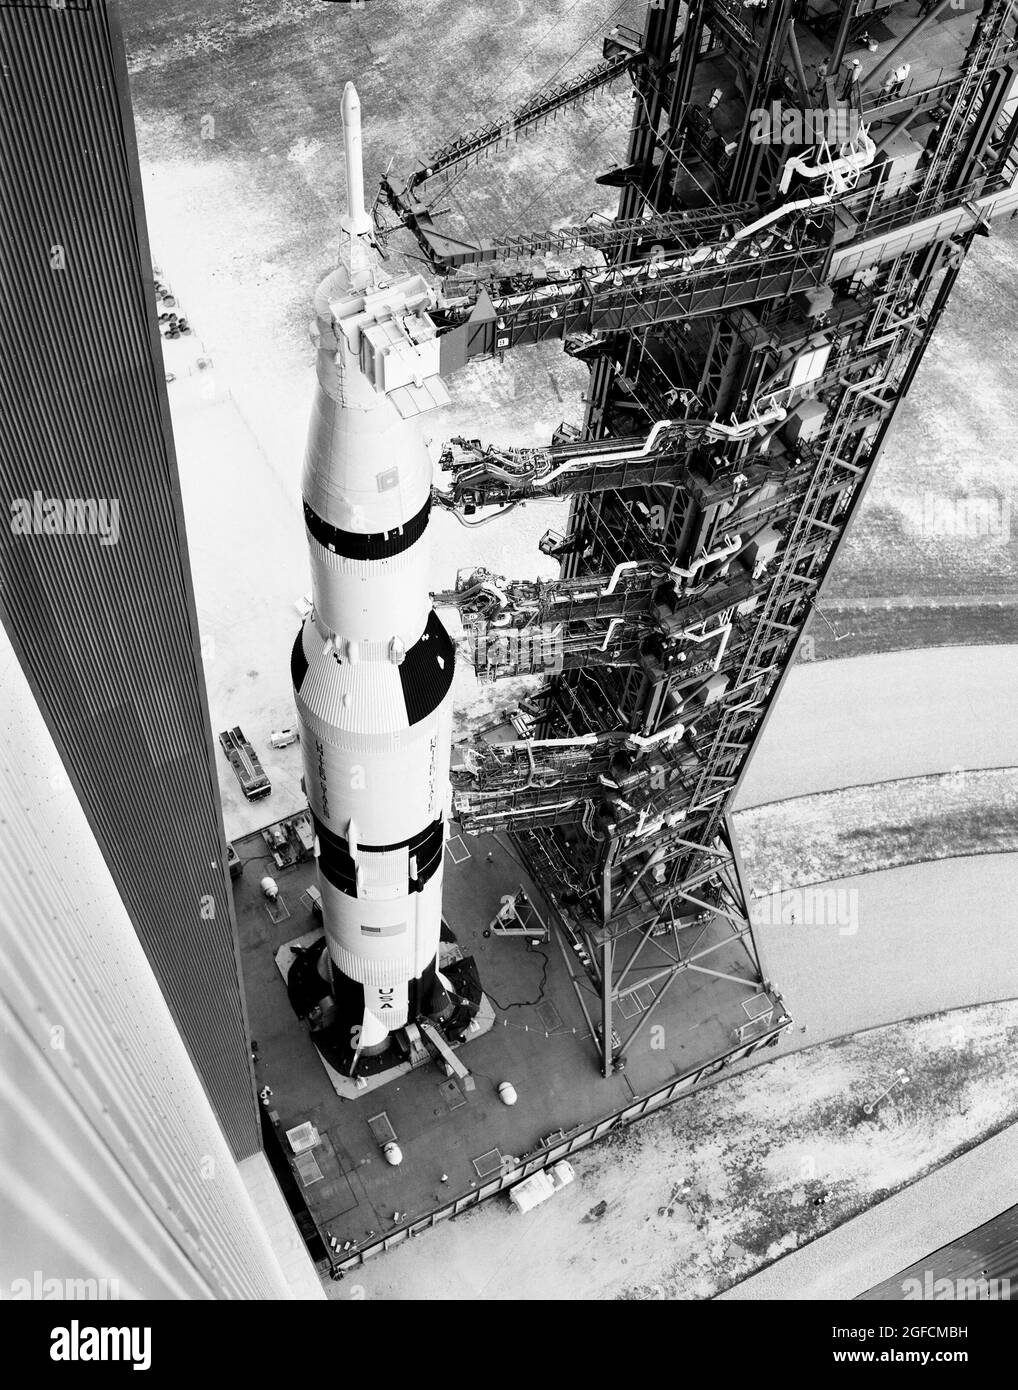 Una vista dall'alto dell'Apollo 6 e del suo gantry che lascia il Vehicle Assembly Building sul trasportatore che si dirige verso il sito di lancio sul Pad 39-A al Kennedy Space Center. Il torreggiante Saturno V da 363 piedi era un veicolo di lancio multi-stadio e multi-motore che si trovava più in alto della Statua della libertà. Complessivamente, i motori Saturn V hanno prodotto la stessa potenza di 85 dighe Hoover Foto Stock